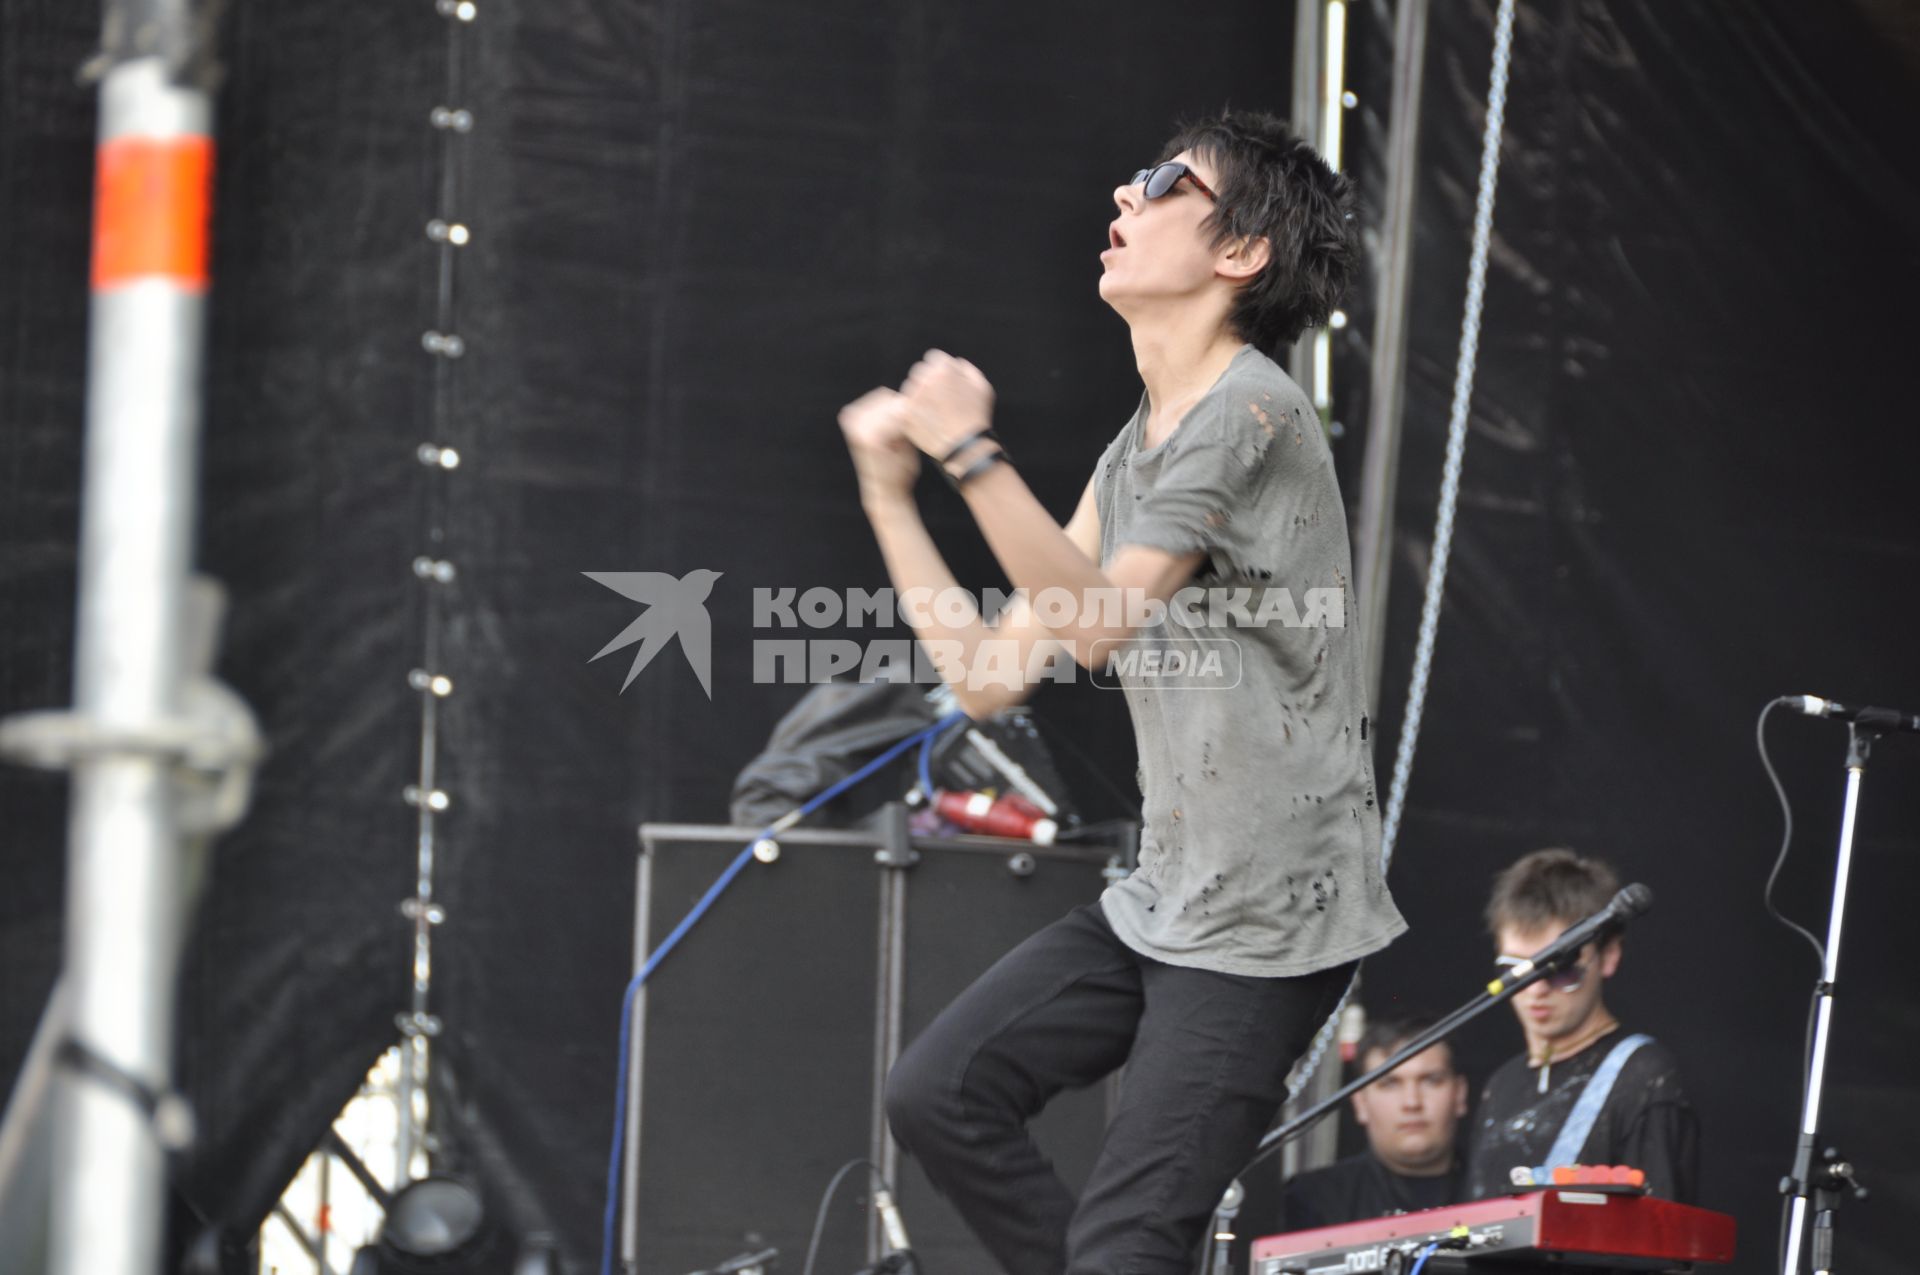 Выступление Земфиры Рамазановой на фестивале рок-музыки Maxidrom-2011. 28 мая 2011 г.